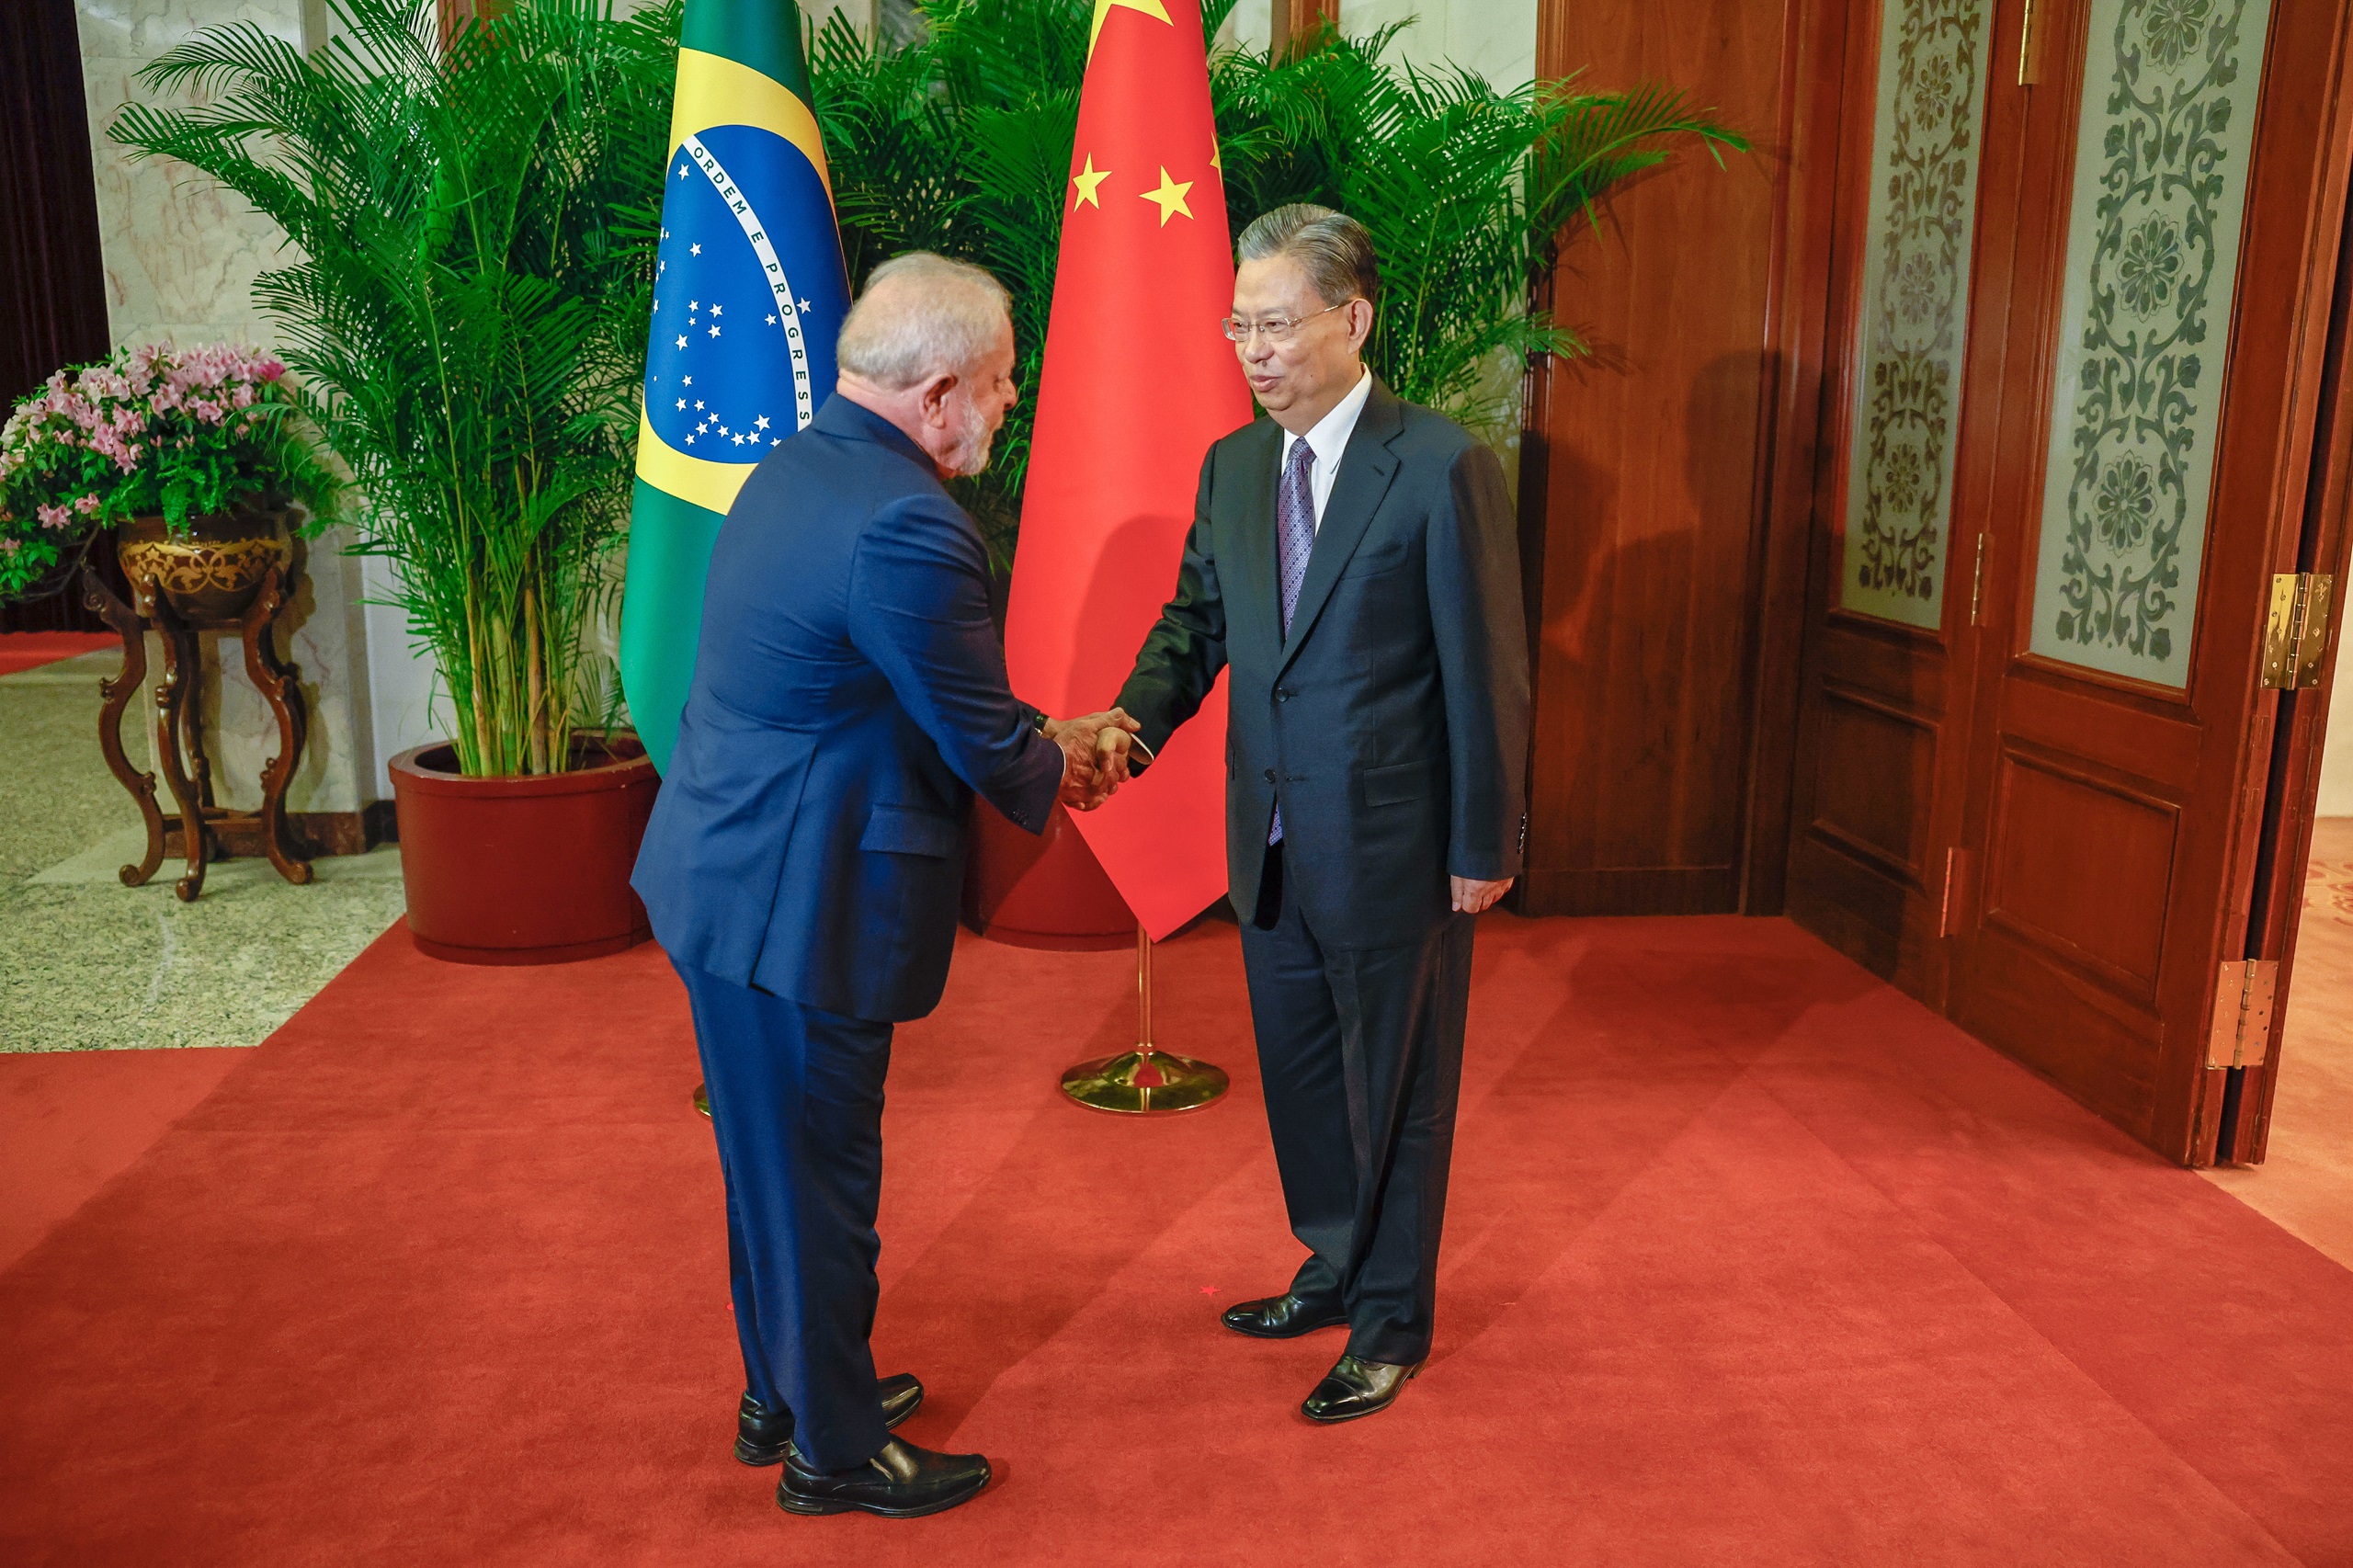 <p>El presidente Lula da Silva saluda a Zhao Leji, presidente de la Asamblea Popular de China, en Beijing. Durante la visita del líder brasileño a China en abril de 2023, los gobiernos firmaron un compromiso para ampliar su agenda verde conjunta (Imagen: <a href="https://flic.kr/p/2otbMLo">Ricardo Stuckert</a> / <a href="https://flic.kr/p/2otbMLo">Palácio do Planalto</a>, <a href="https://creativecommons.org/licenses/by/2.0/">CC BY</a>)</p>